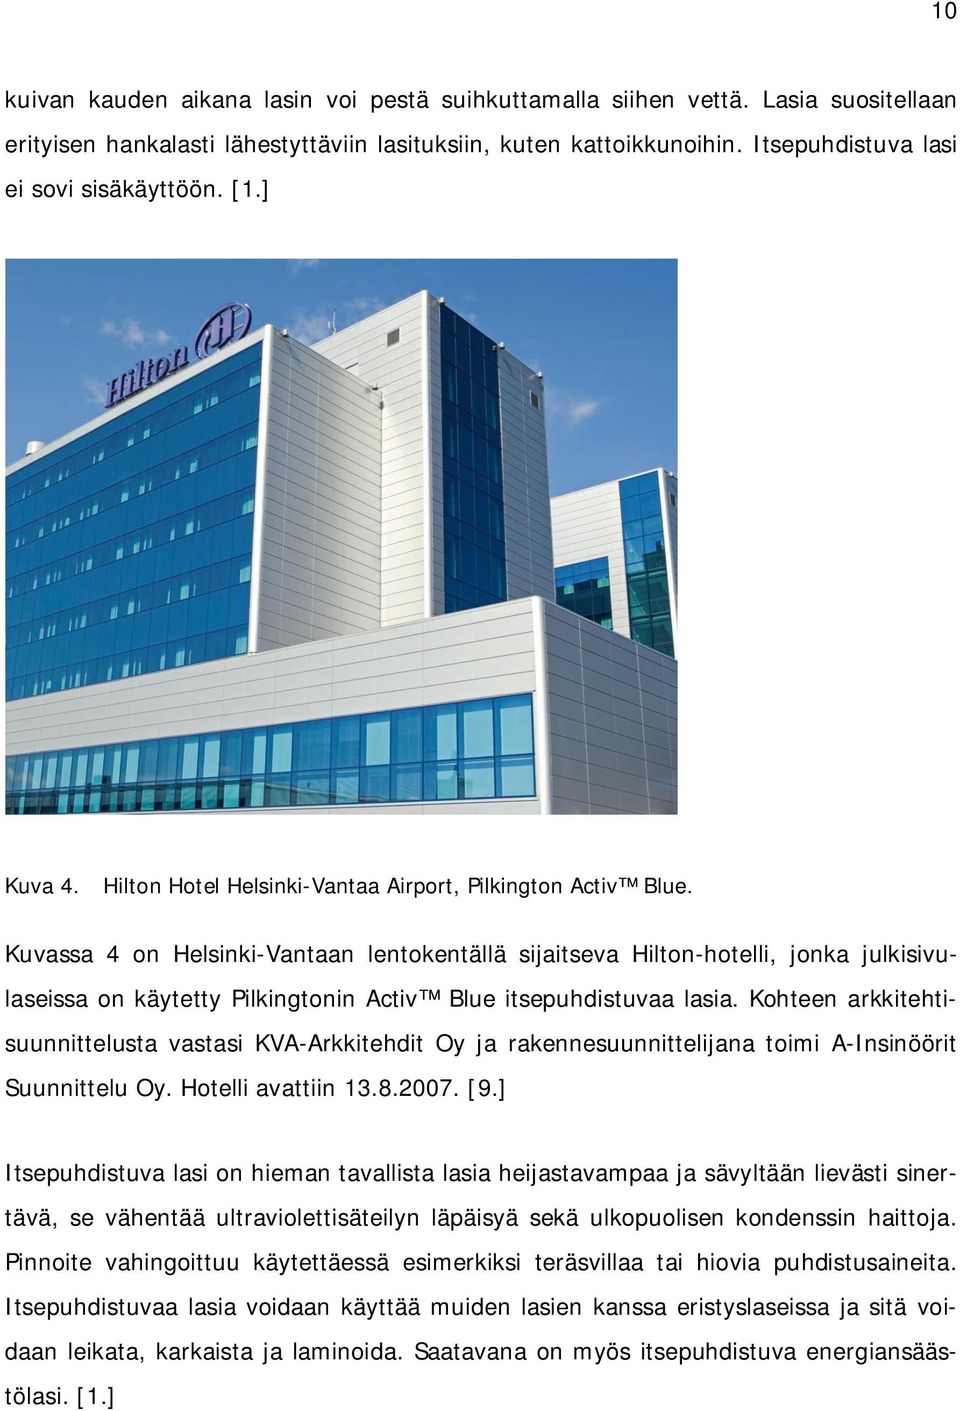 Kuvassa 4 on Helsinki-Vantaan lentokentällä sijaitseva Hilton-hotelli, jonka julkisivulaseissa on käytetty Pilkingtonin Activ Blue itsepuhdistuvaa lasia.